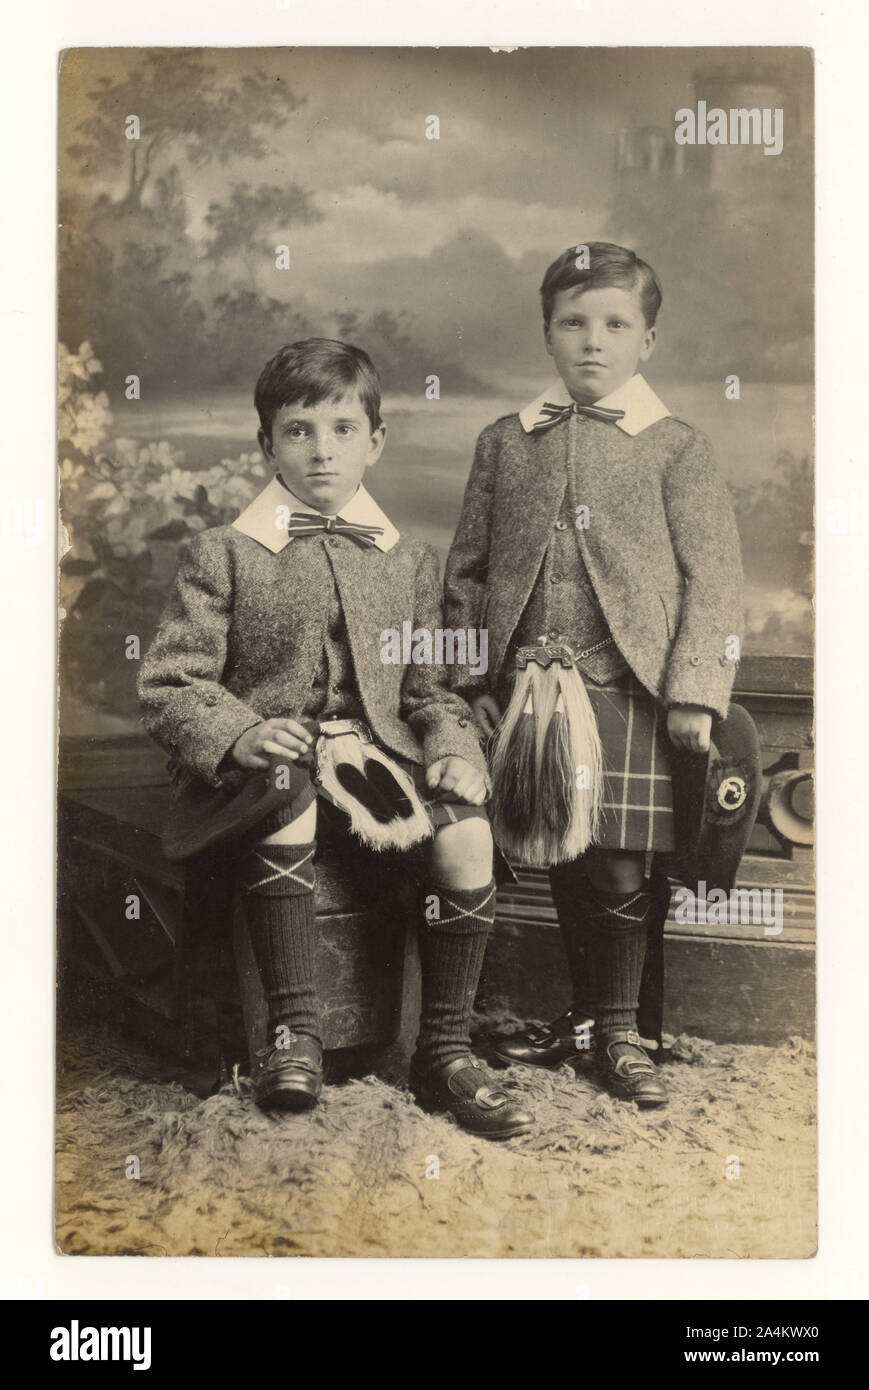 All'inizio del 1900, ritratto di giovani fratelli, William Purdie di 8 anni, Thomas Purdie di 5 anni, indossando sporrans, datato 29 giugno 1912, Hamilton, Lanarkshire, Scozia, Regno Unito Foto Stock